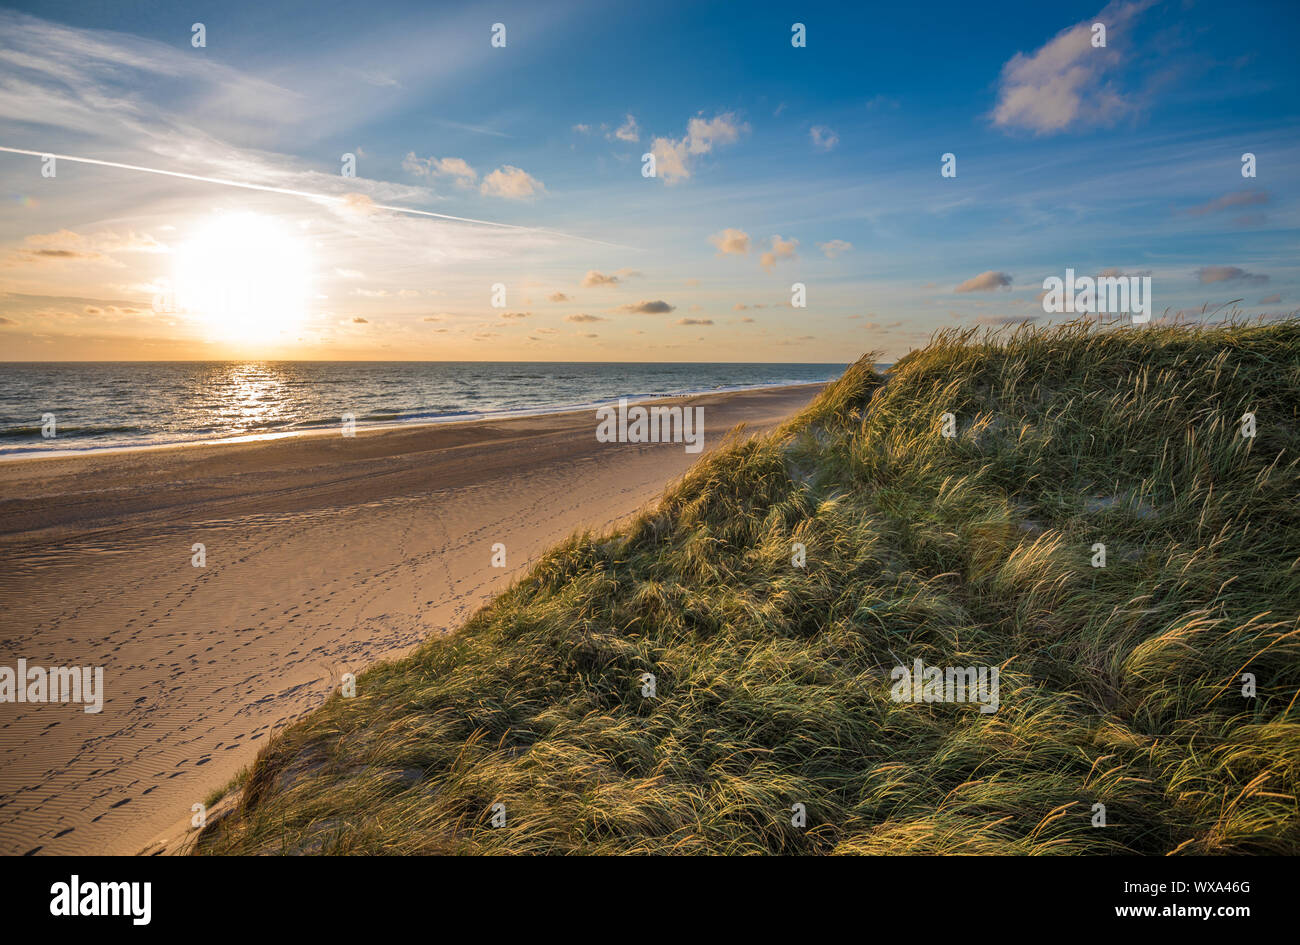 Spiaggia del mare del Nord, costa dello Jutland in Danimarca Foto Stock